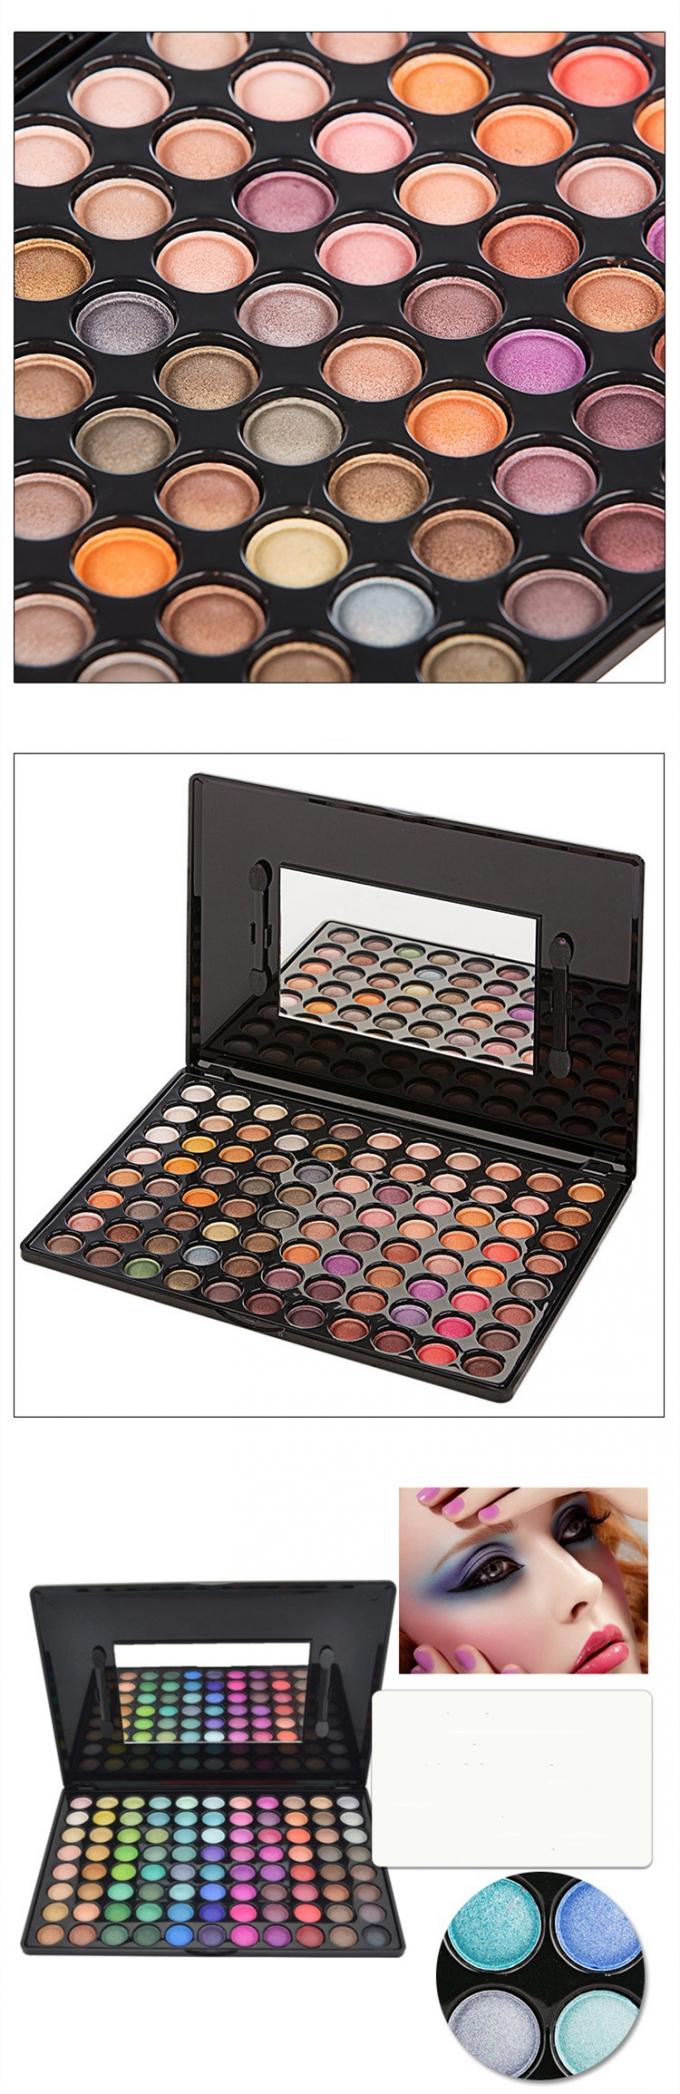 Νέος φθάστε παλέτα 88 Makeup χρώμα όλη Shimmer η σκιά ματιών σκιάς ματιών